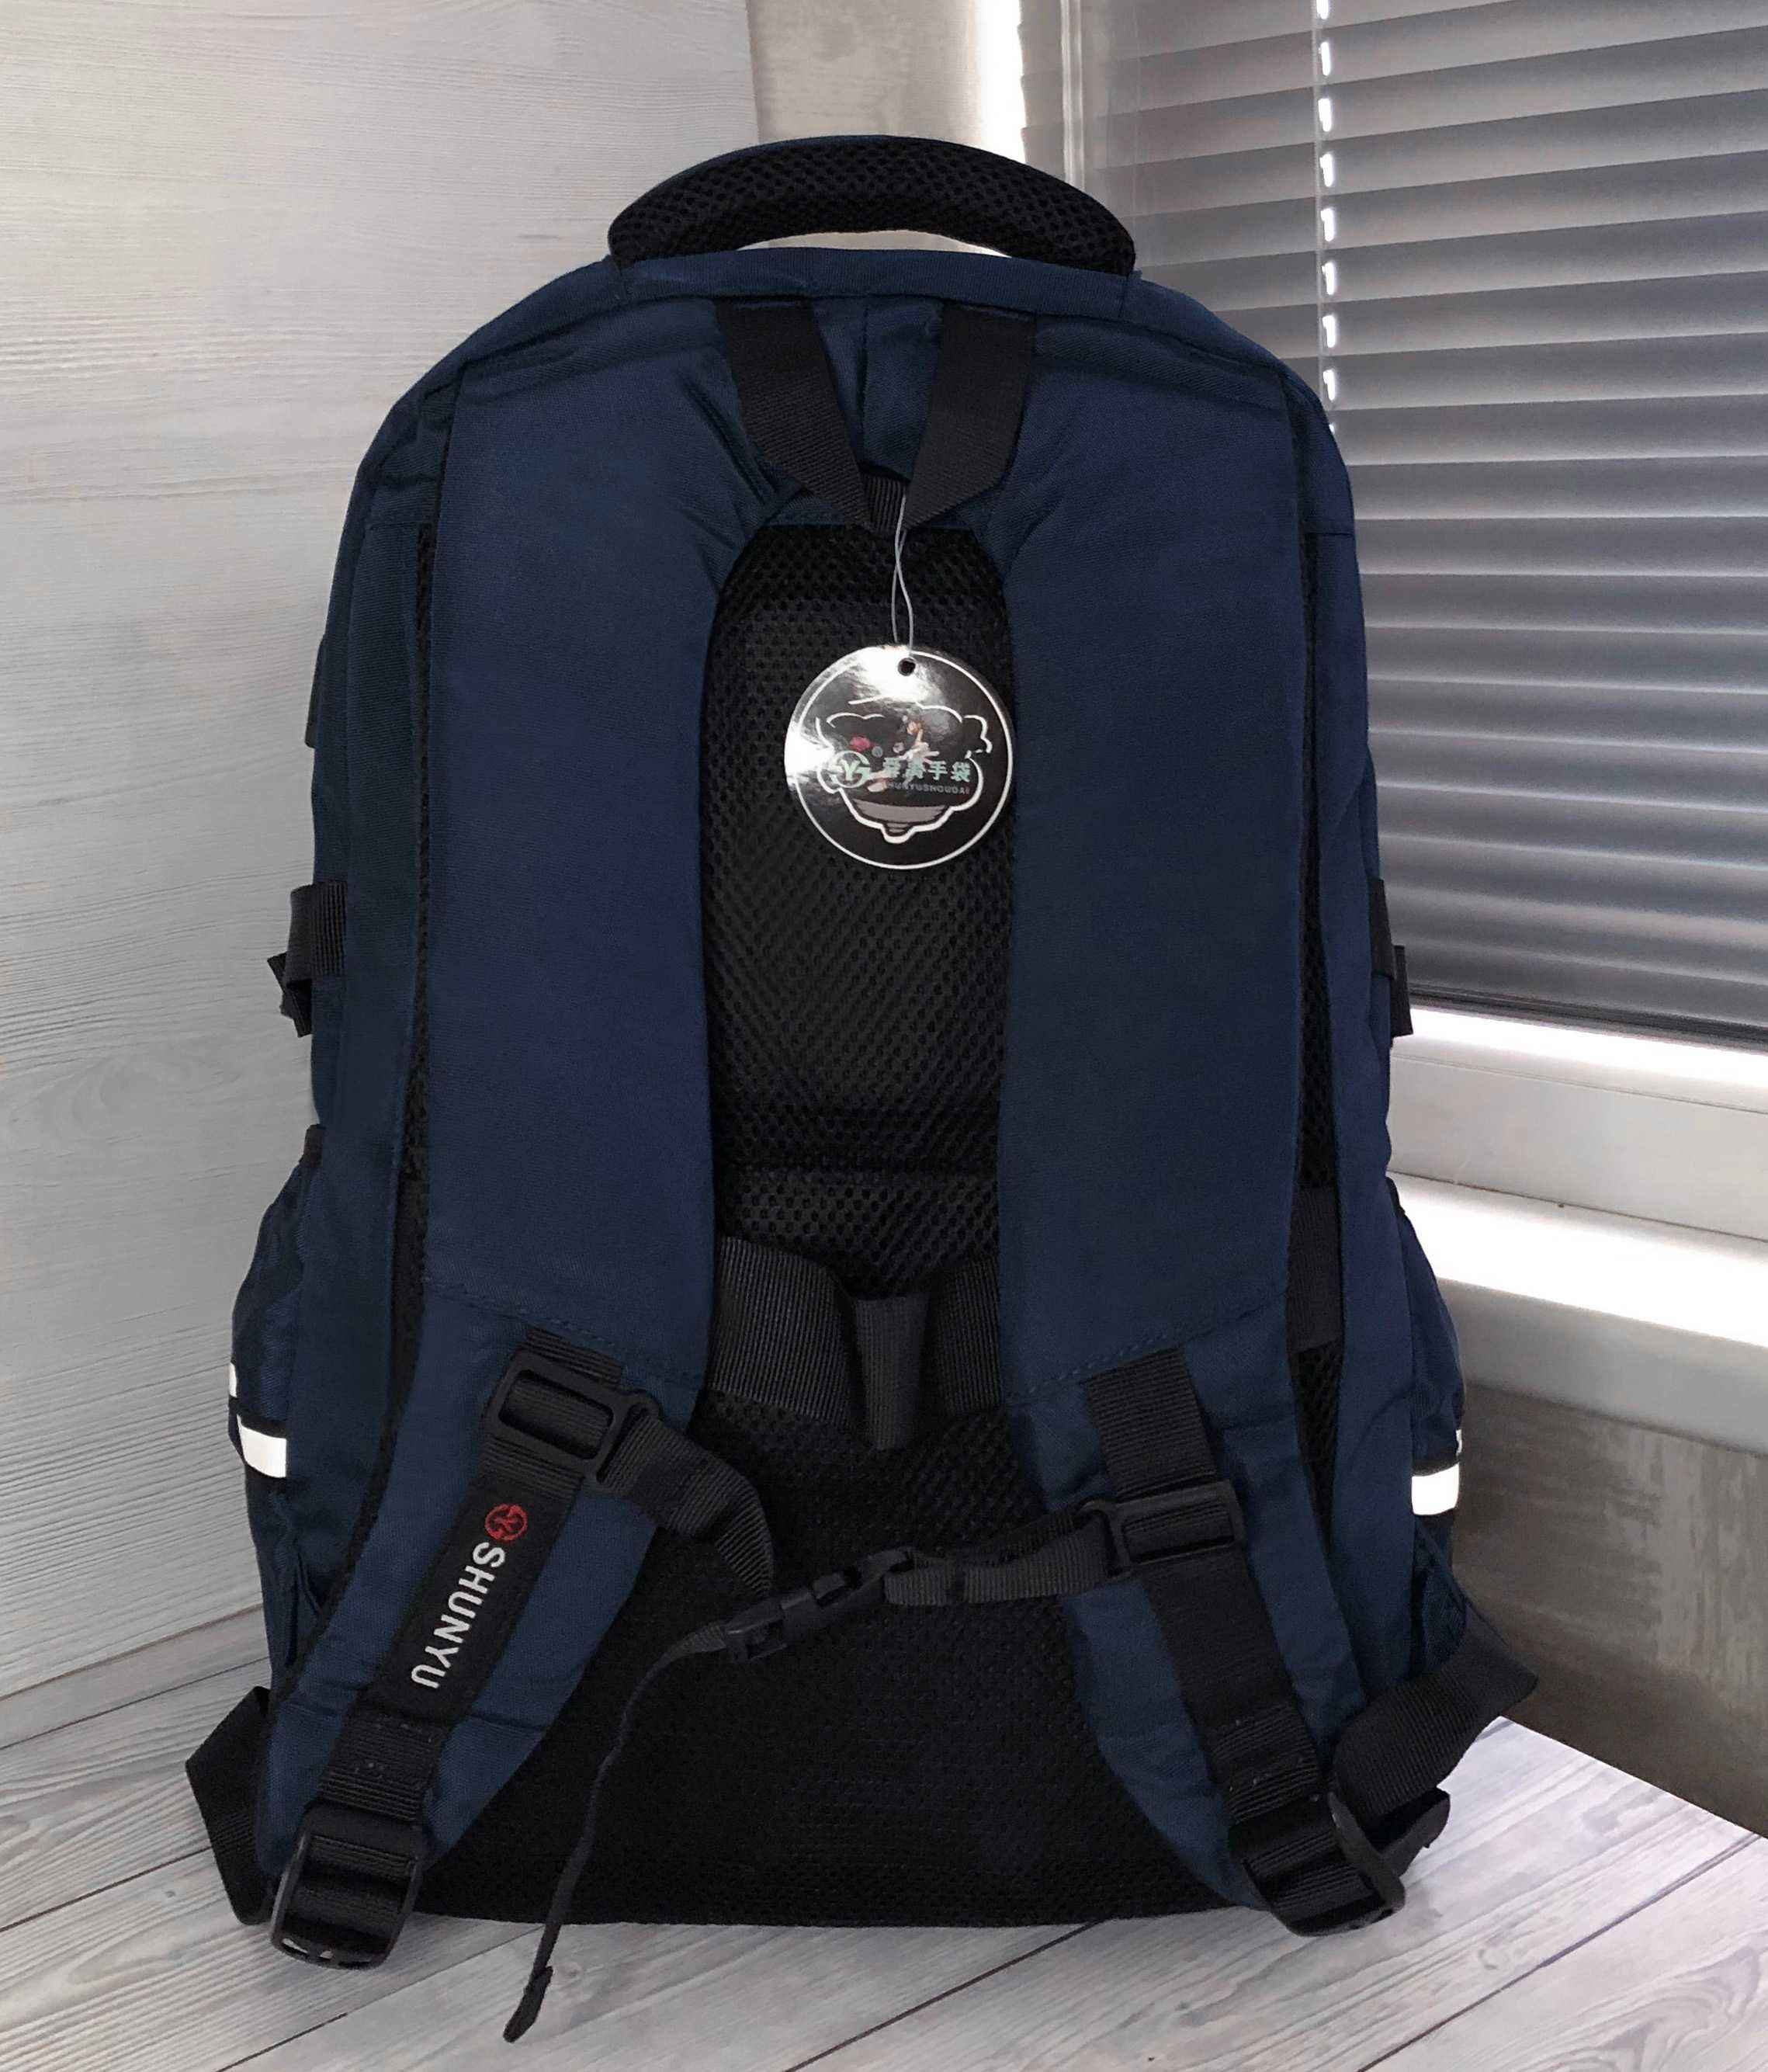 Мужской рюкзак с USB  темно-синий повседневный, для ноутбука 17 дюймов